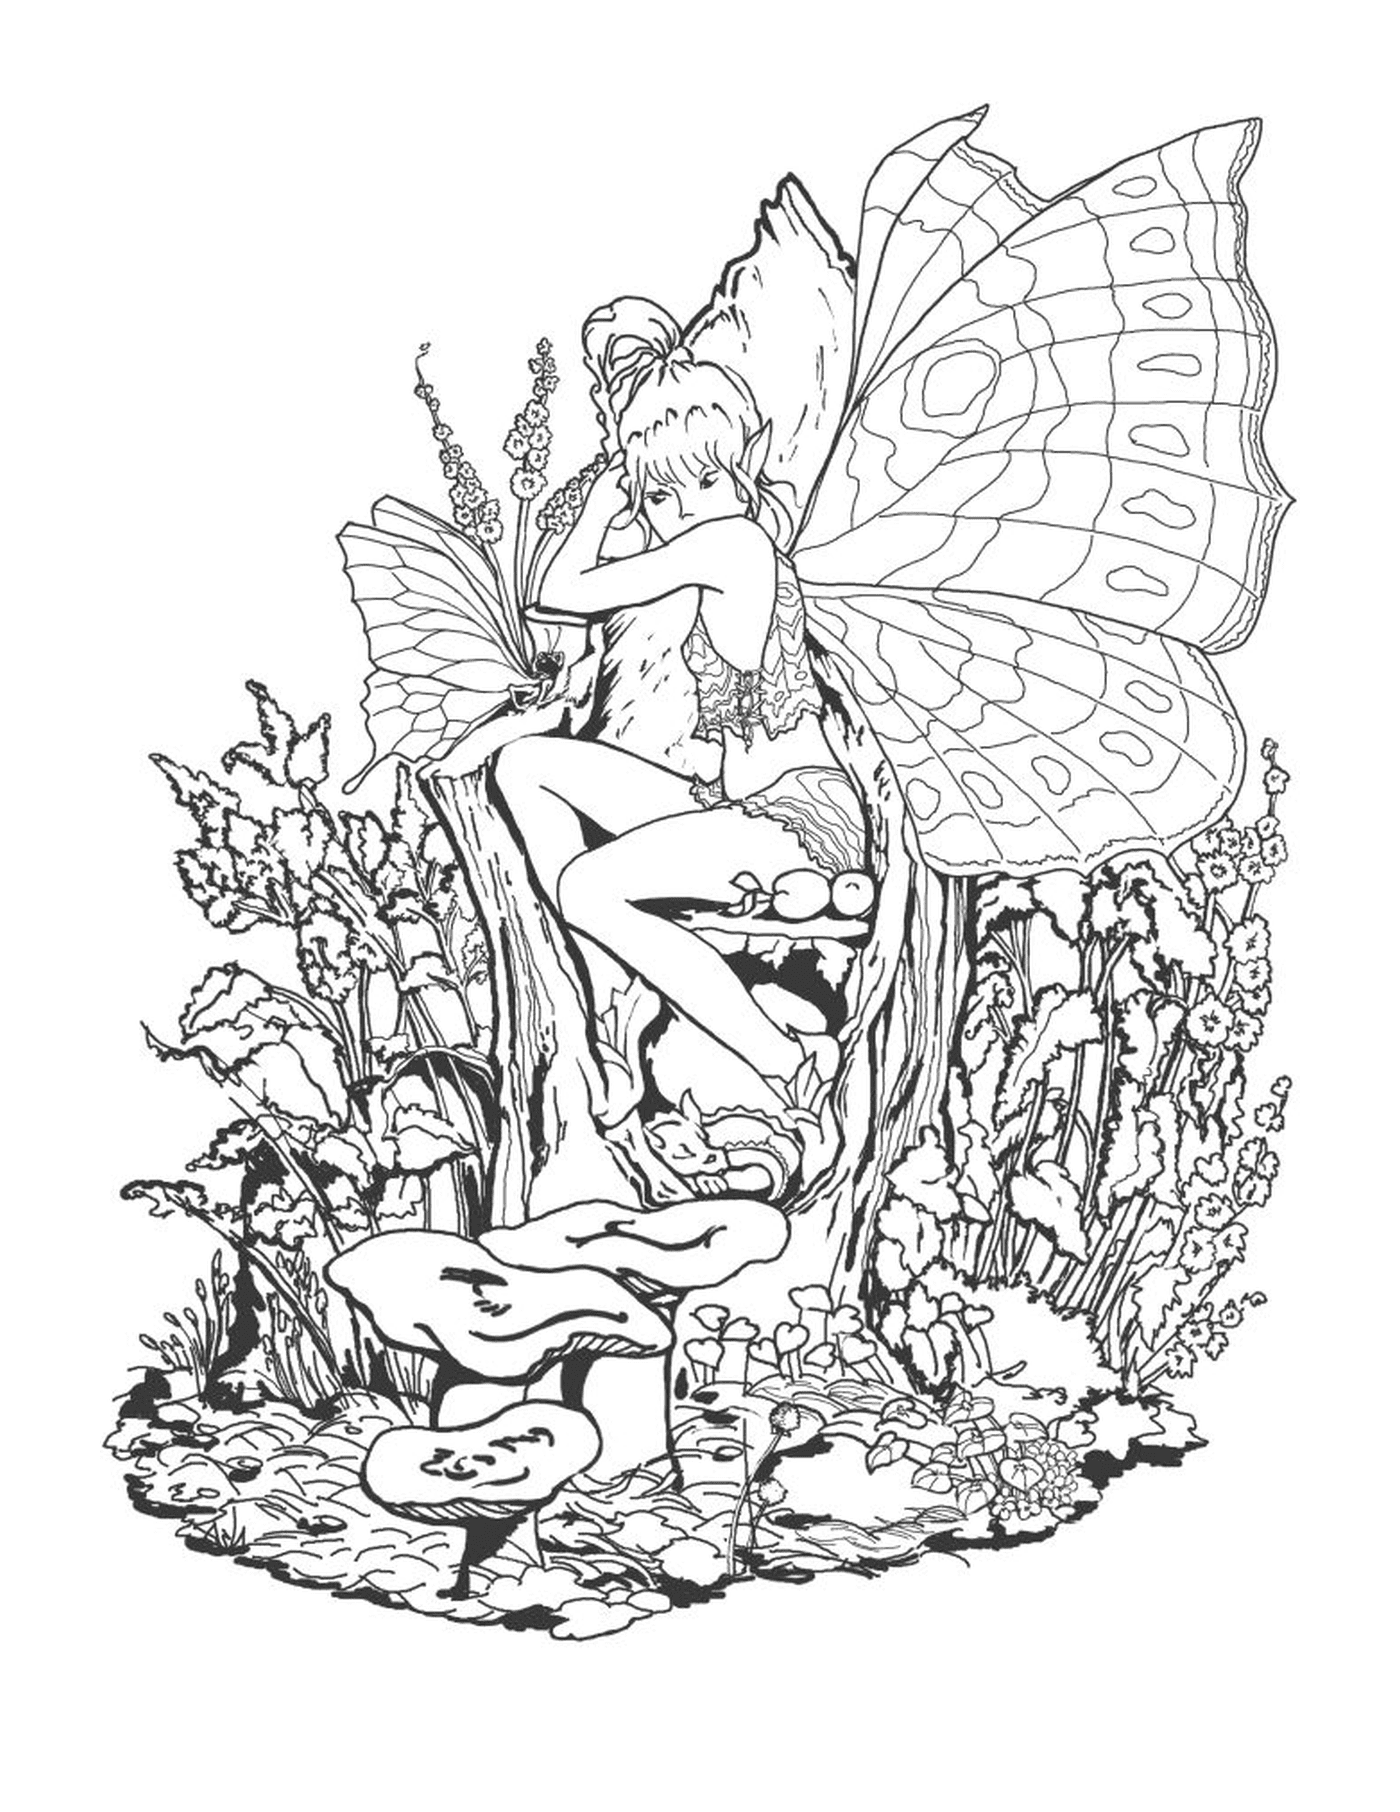  Una fata seduta su un fungo con una farfalla in mano 